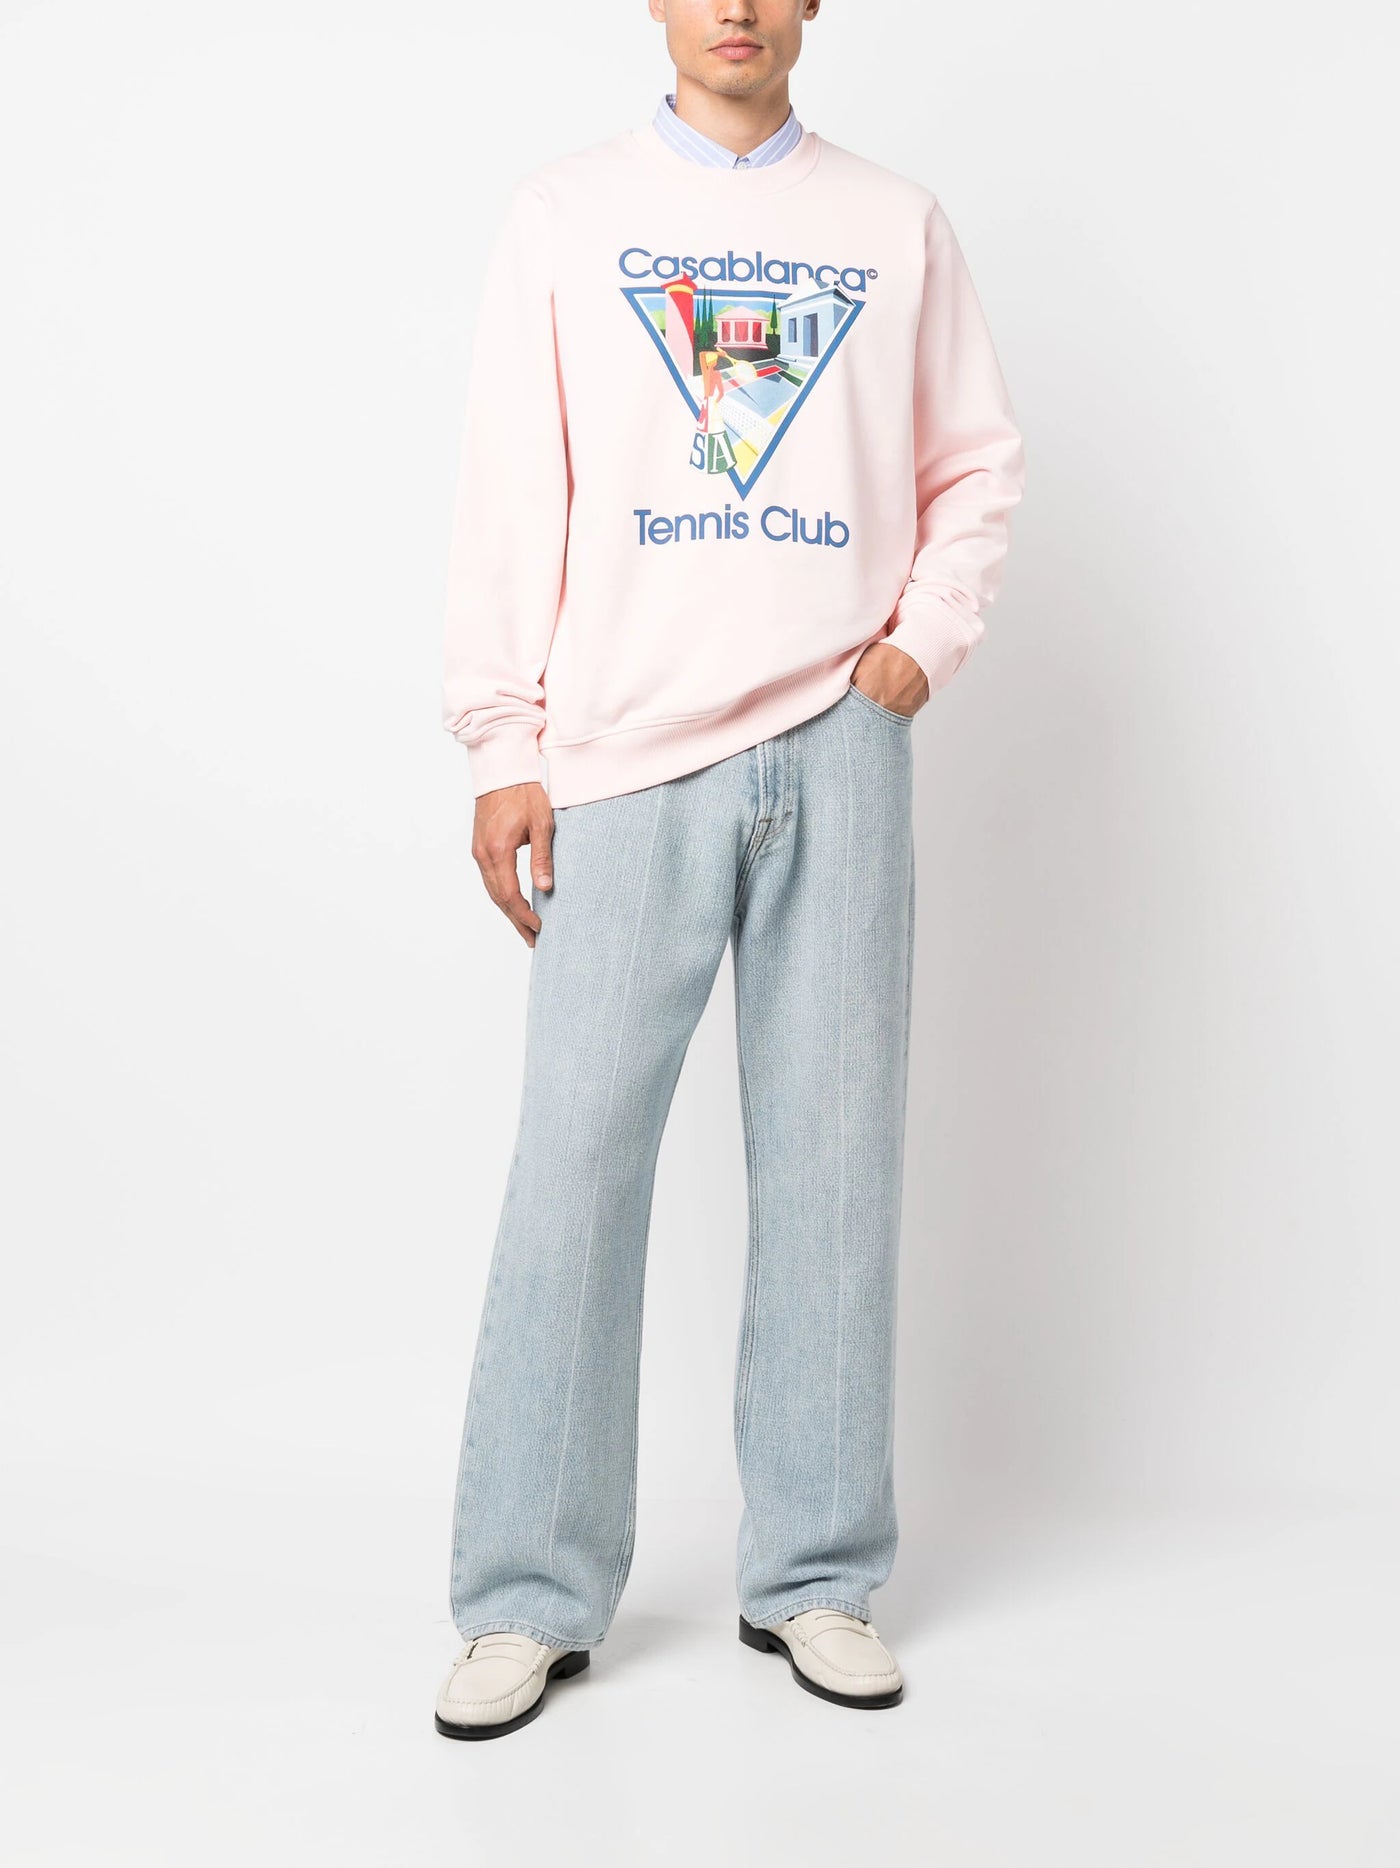 Casablanca La Joueuse Tennis Club Sweatshirt in Pink